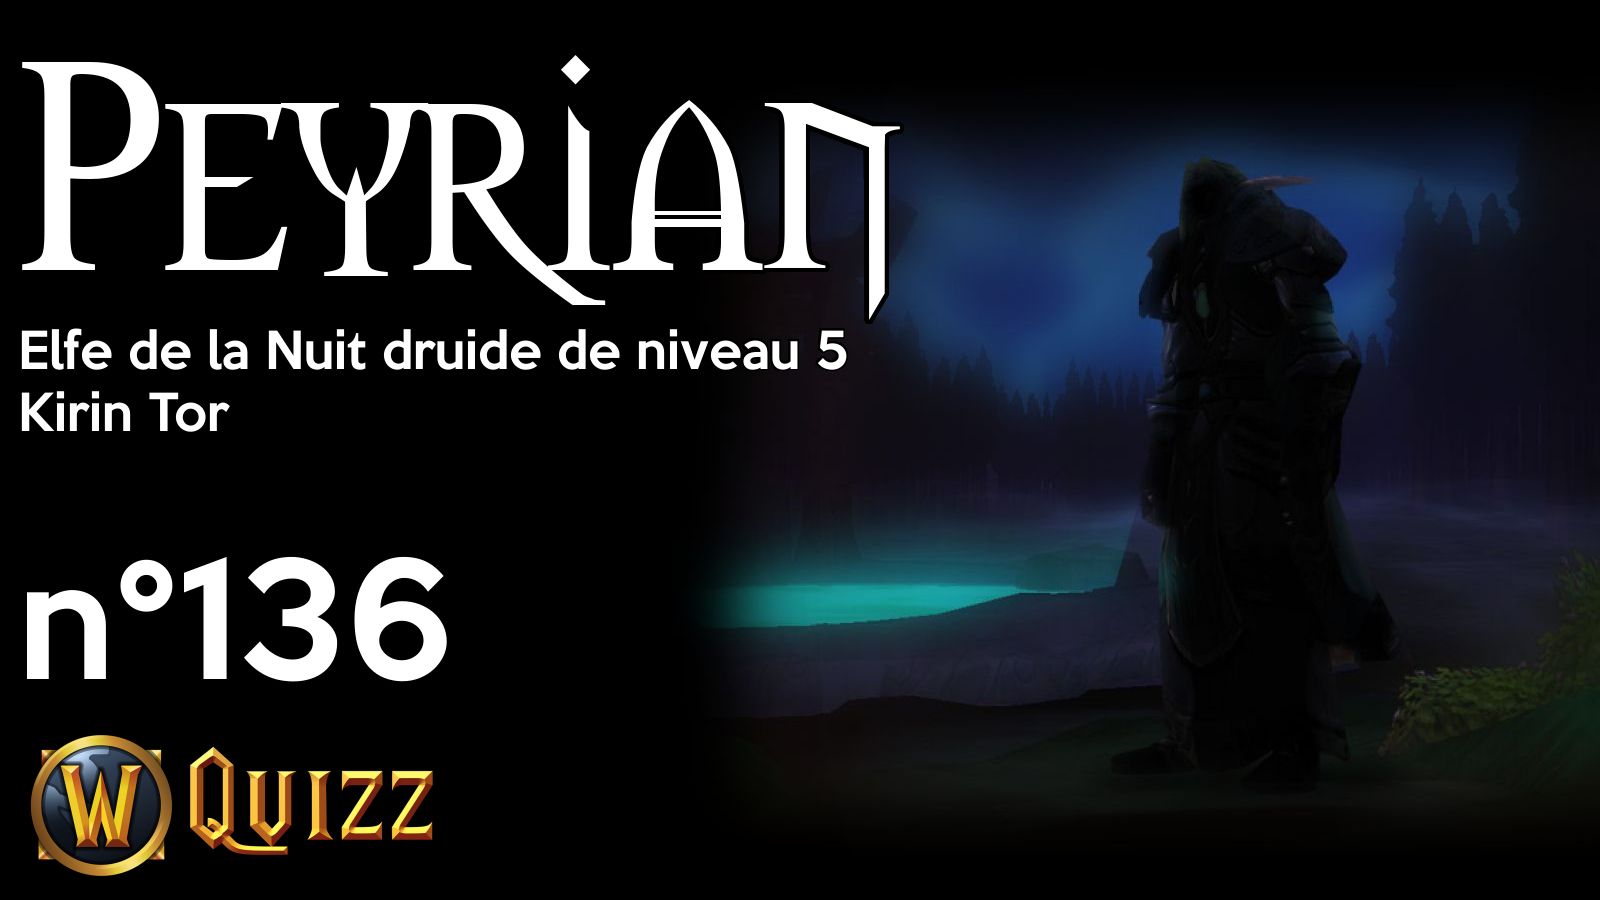 Peyrian, Elfe de la Nuit druide de niveau 5, Kirin Tor